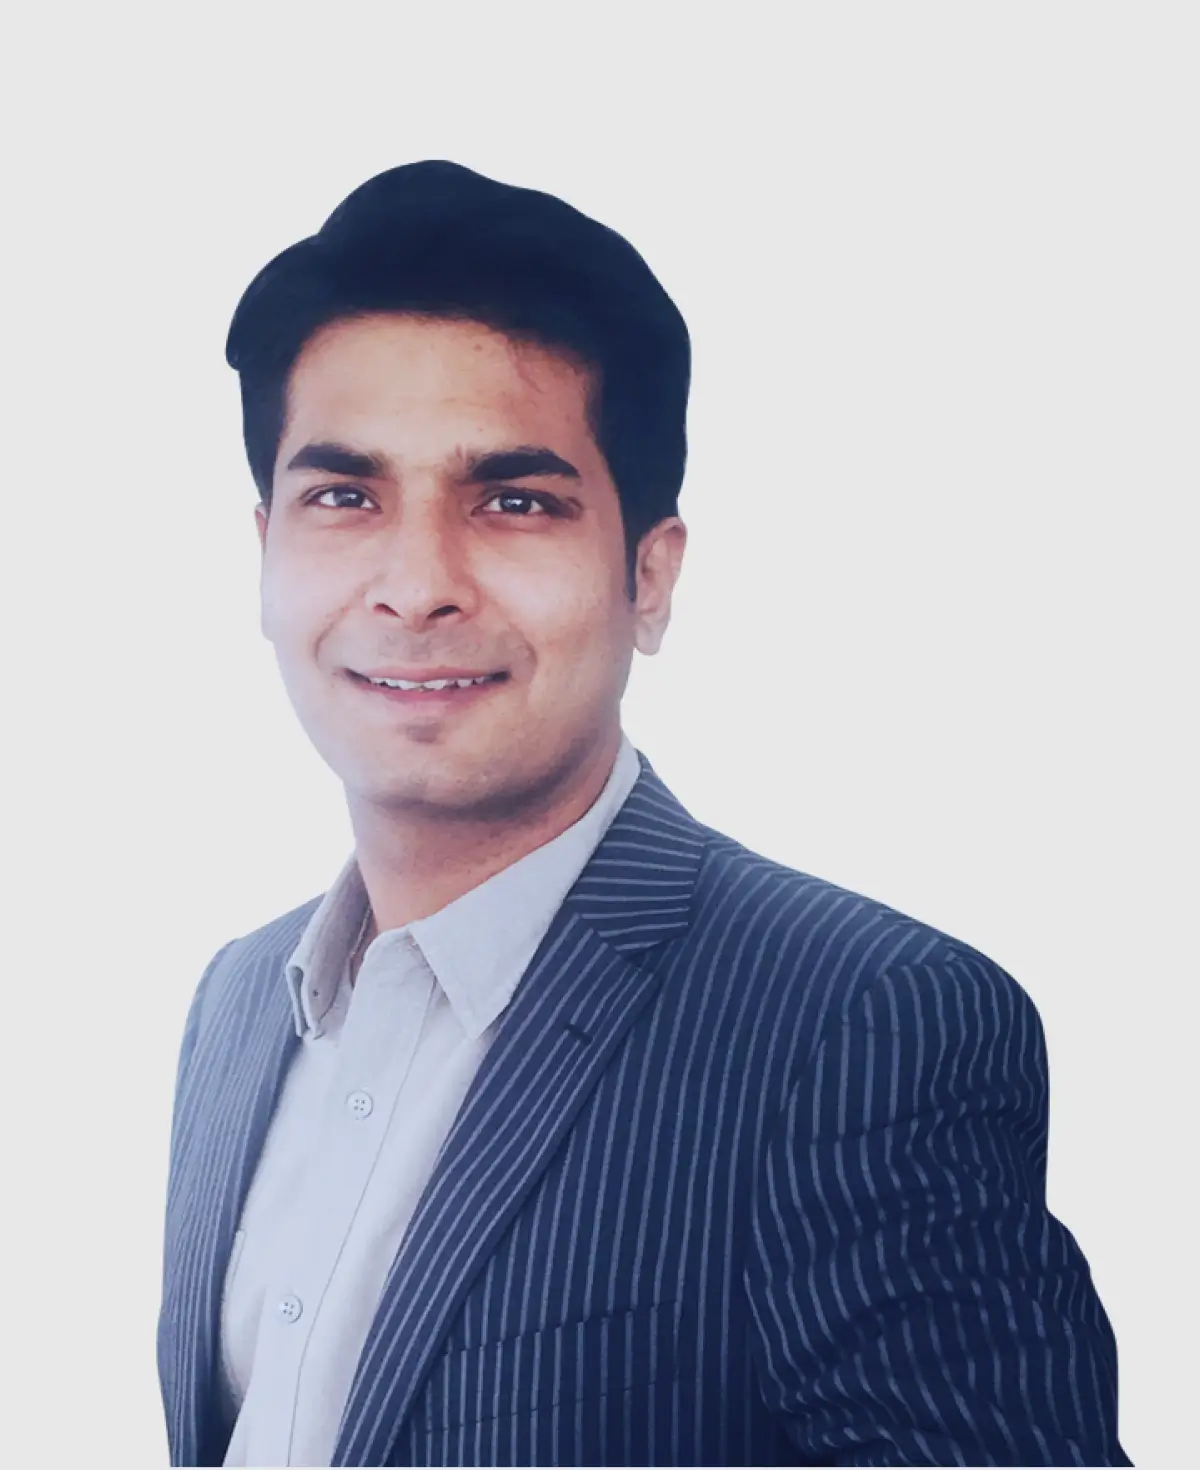 Userfacet CEO Tanuj Shah